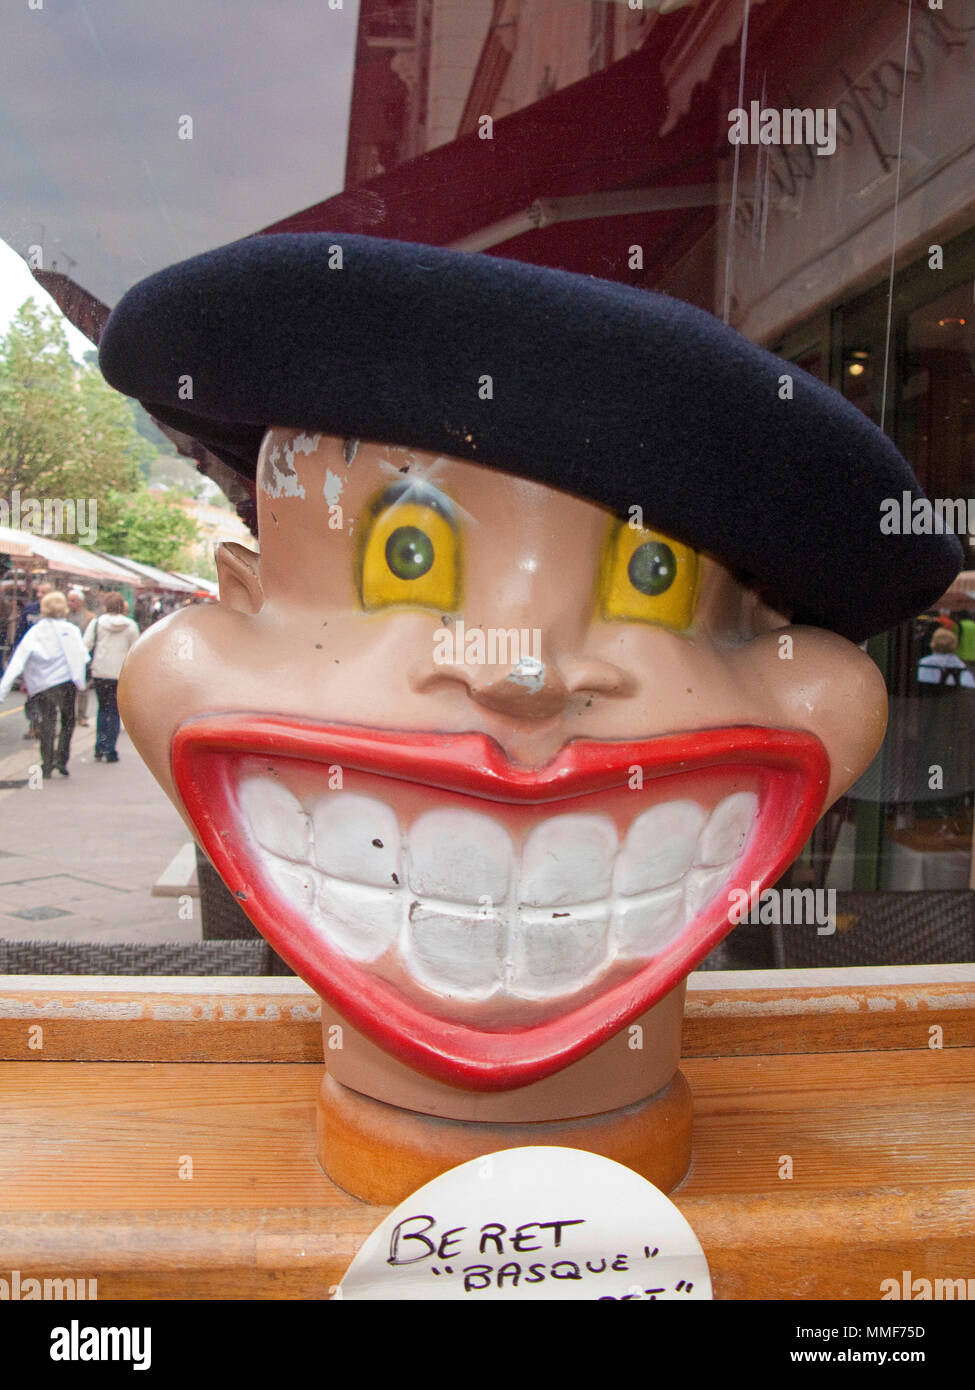 Berretto basco, beret su un fumetto sorridente testa, Cours Saleya, Nizza Côte d'Azur, Alpes-Maritimes, Francia del Sud, Francia, Europa Foto Stock